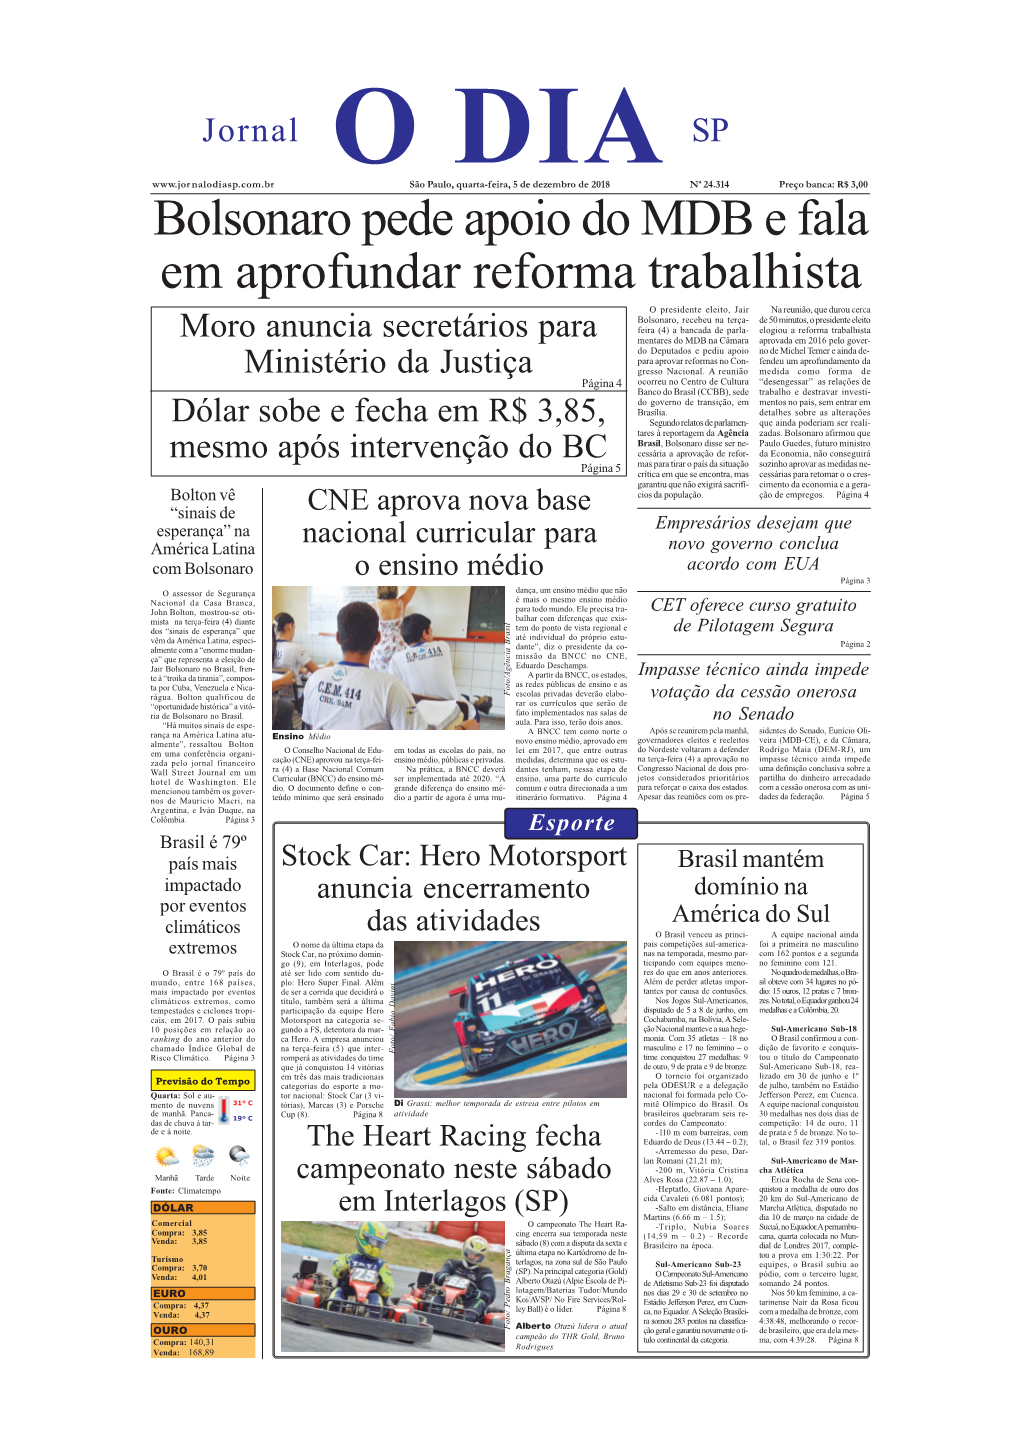 Bolsonaro Pede Apoio Do MDB E Fala Em Aprofundar Reforma